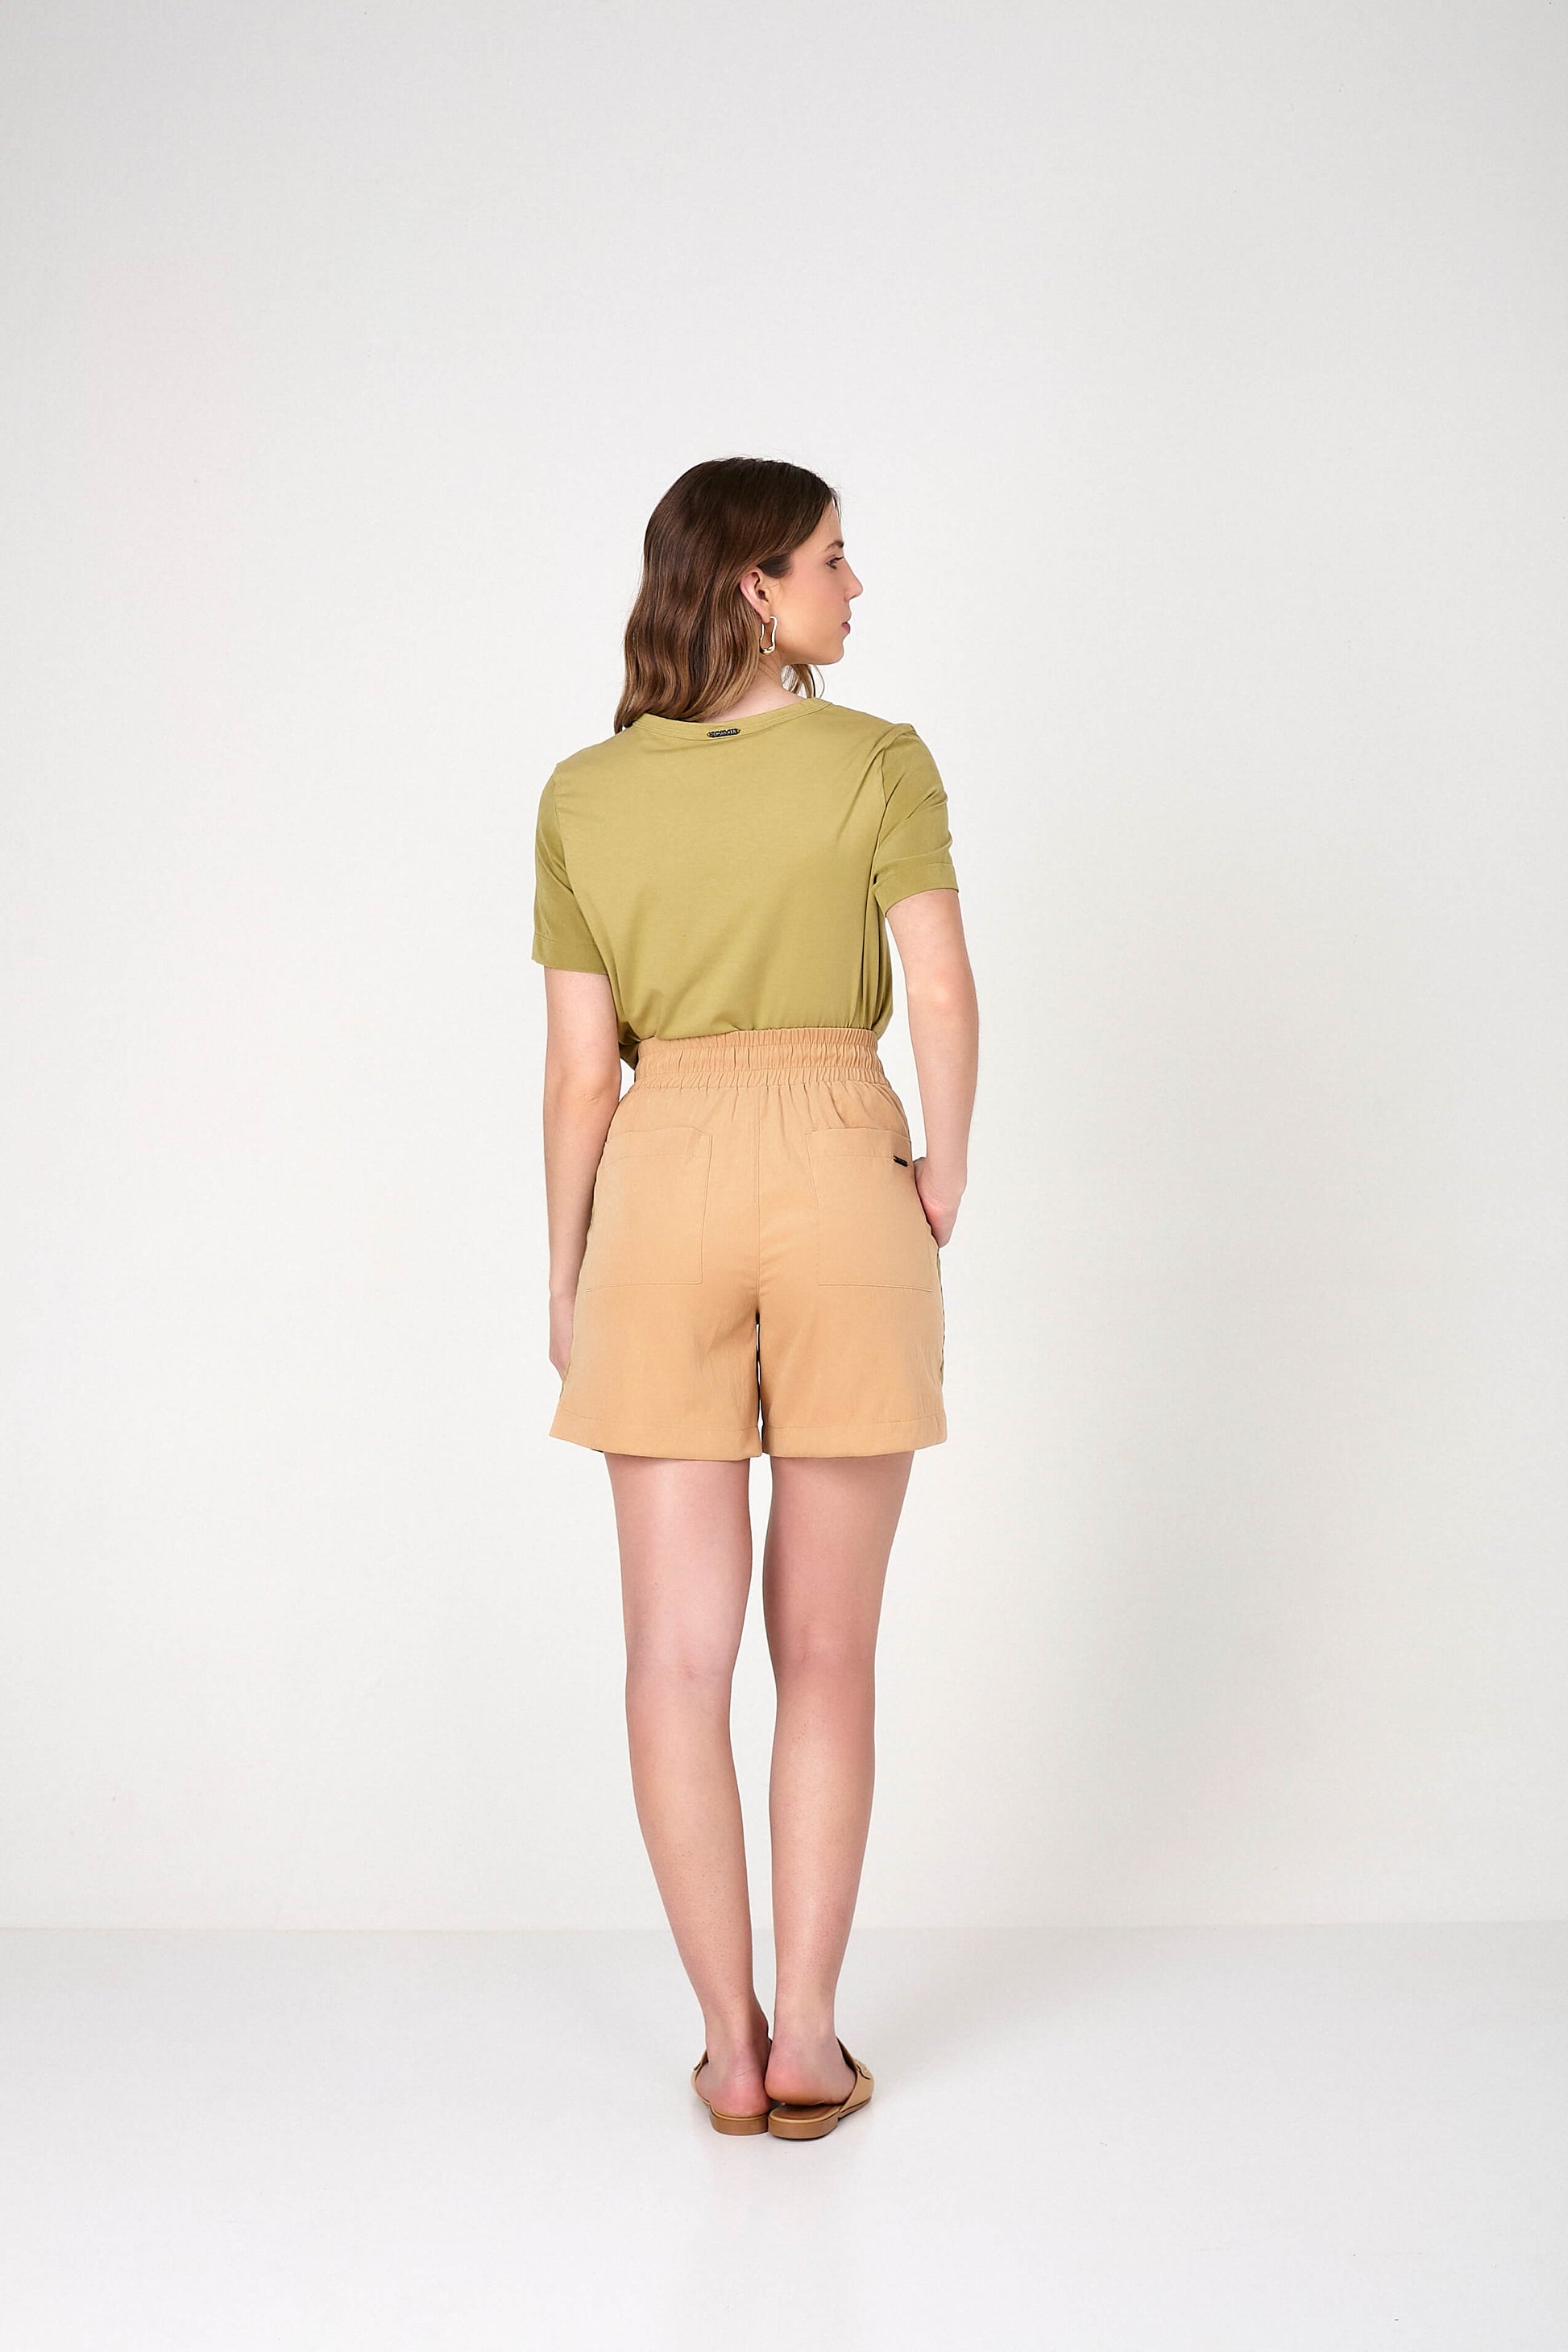 shorts tactel comfort cintura intermediária com detalhe bicolor – Scalon